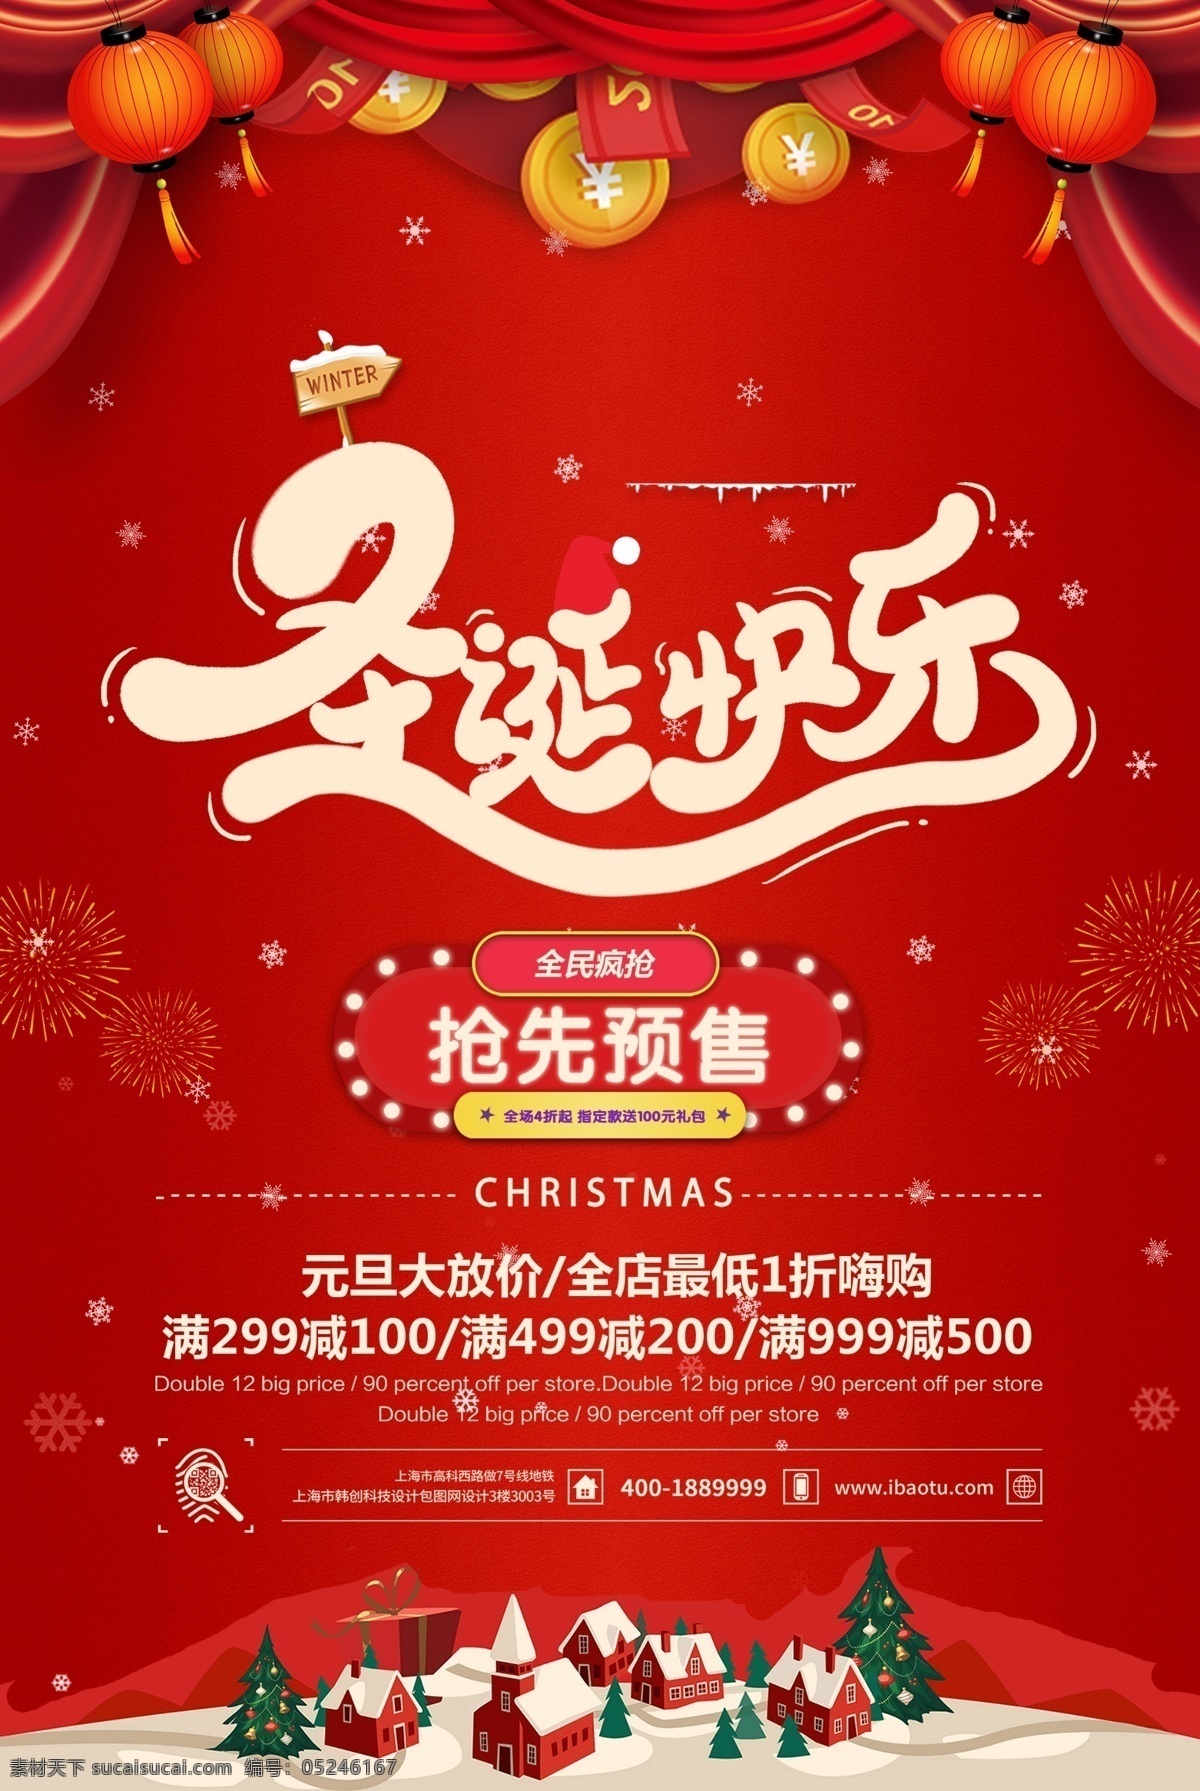 中国 红 圣诞 平安夜 海报 中国红 营销推广 平安夜圣诞节 分层